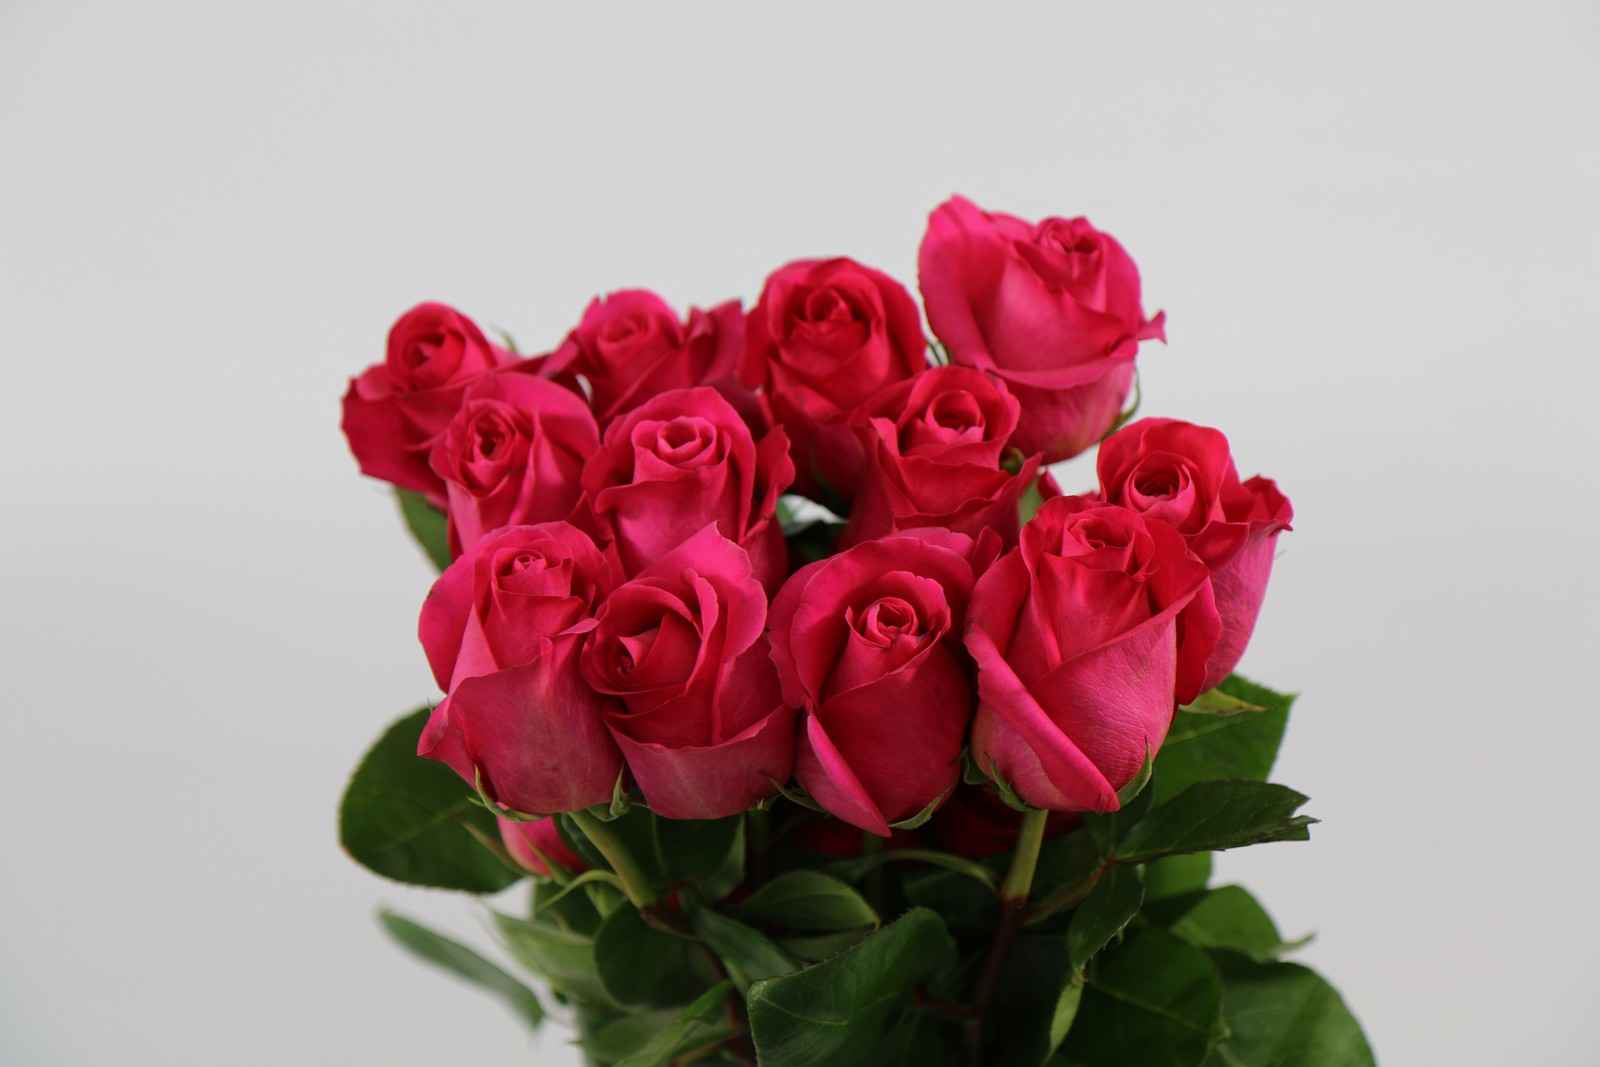 Срезанные цветы оптом Rosa ec pink floyd от 50шт из Голландии с доставкой по России